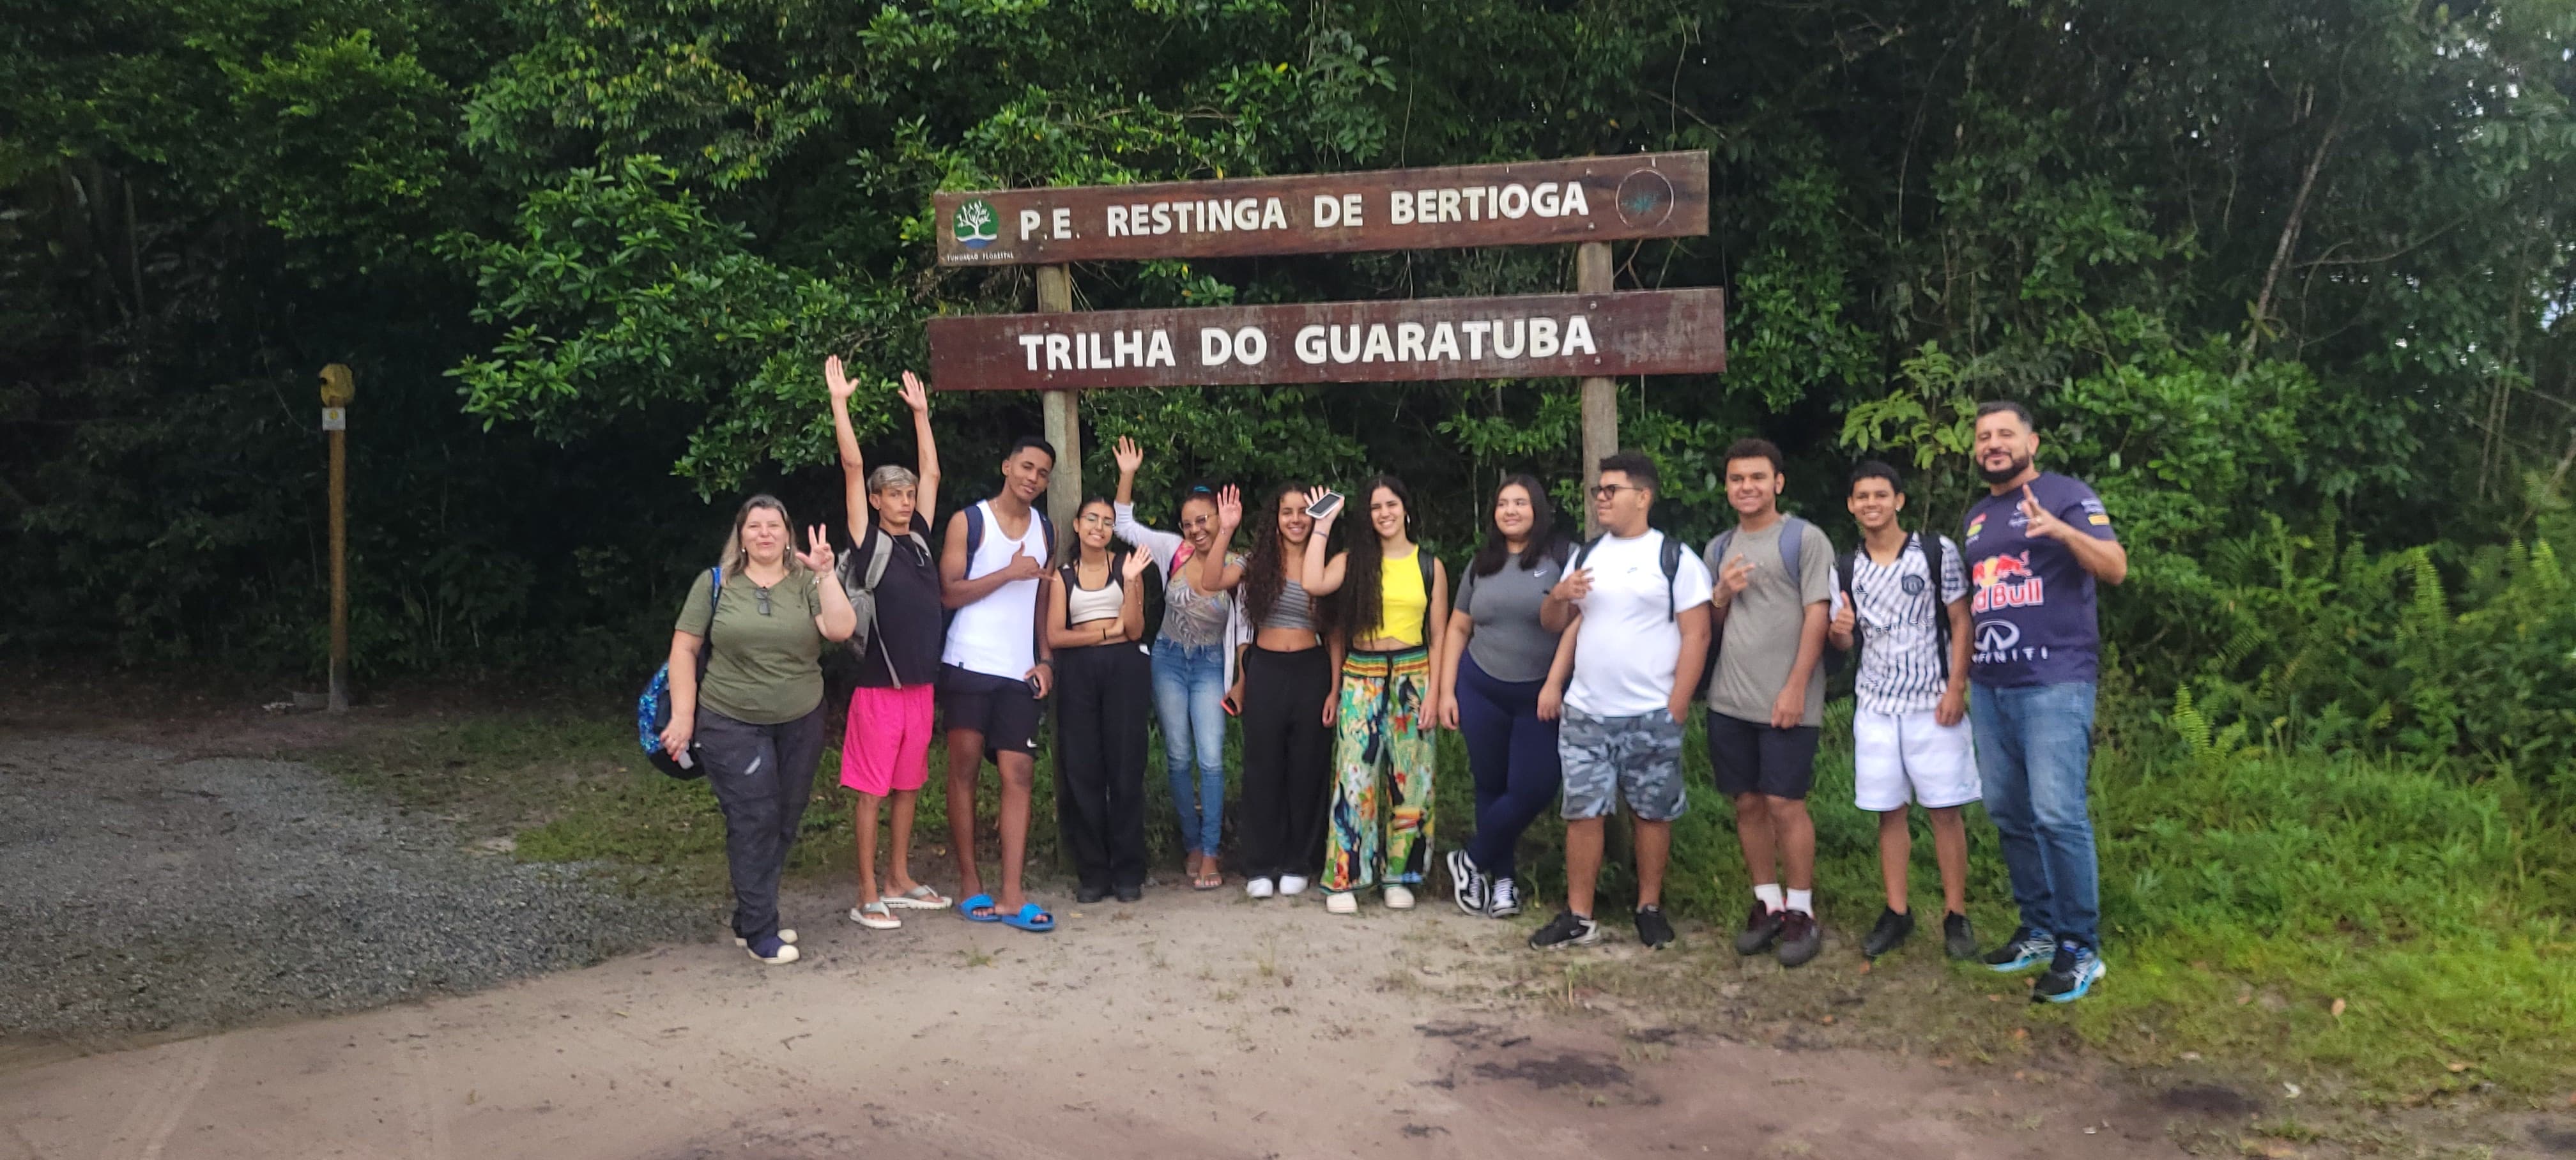 Alunos da rede pública de Bertioga realizam visita técnica em trilha ecológica